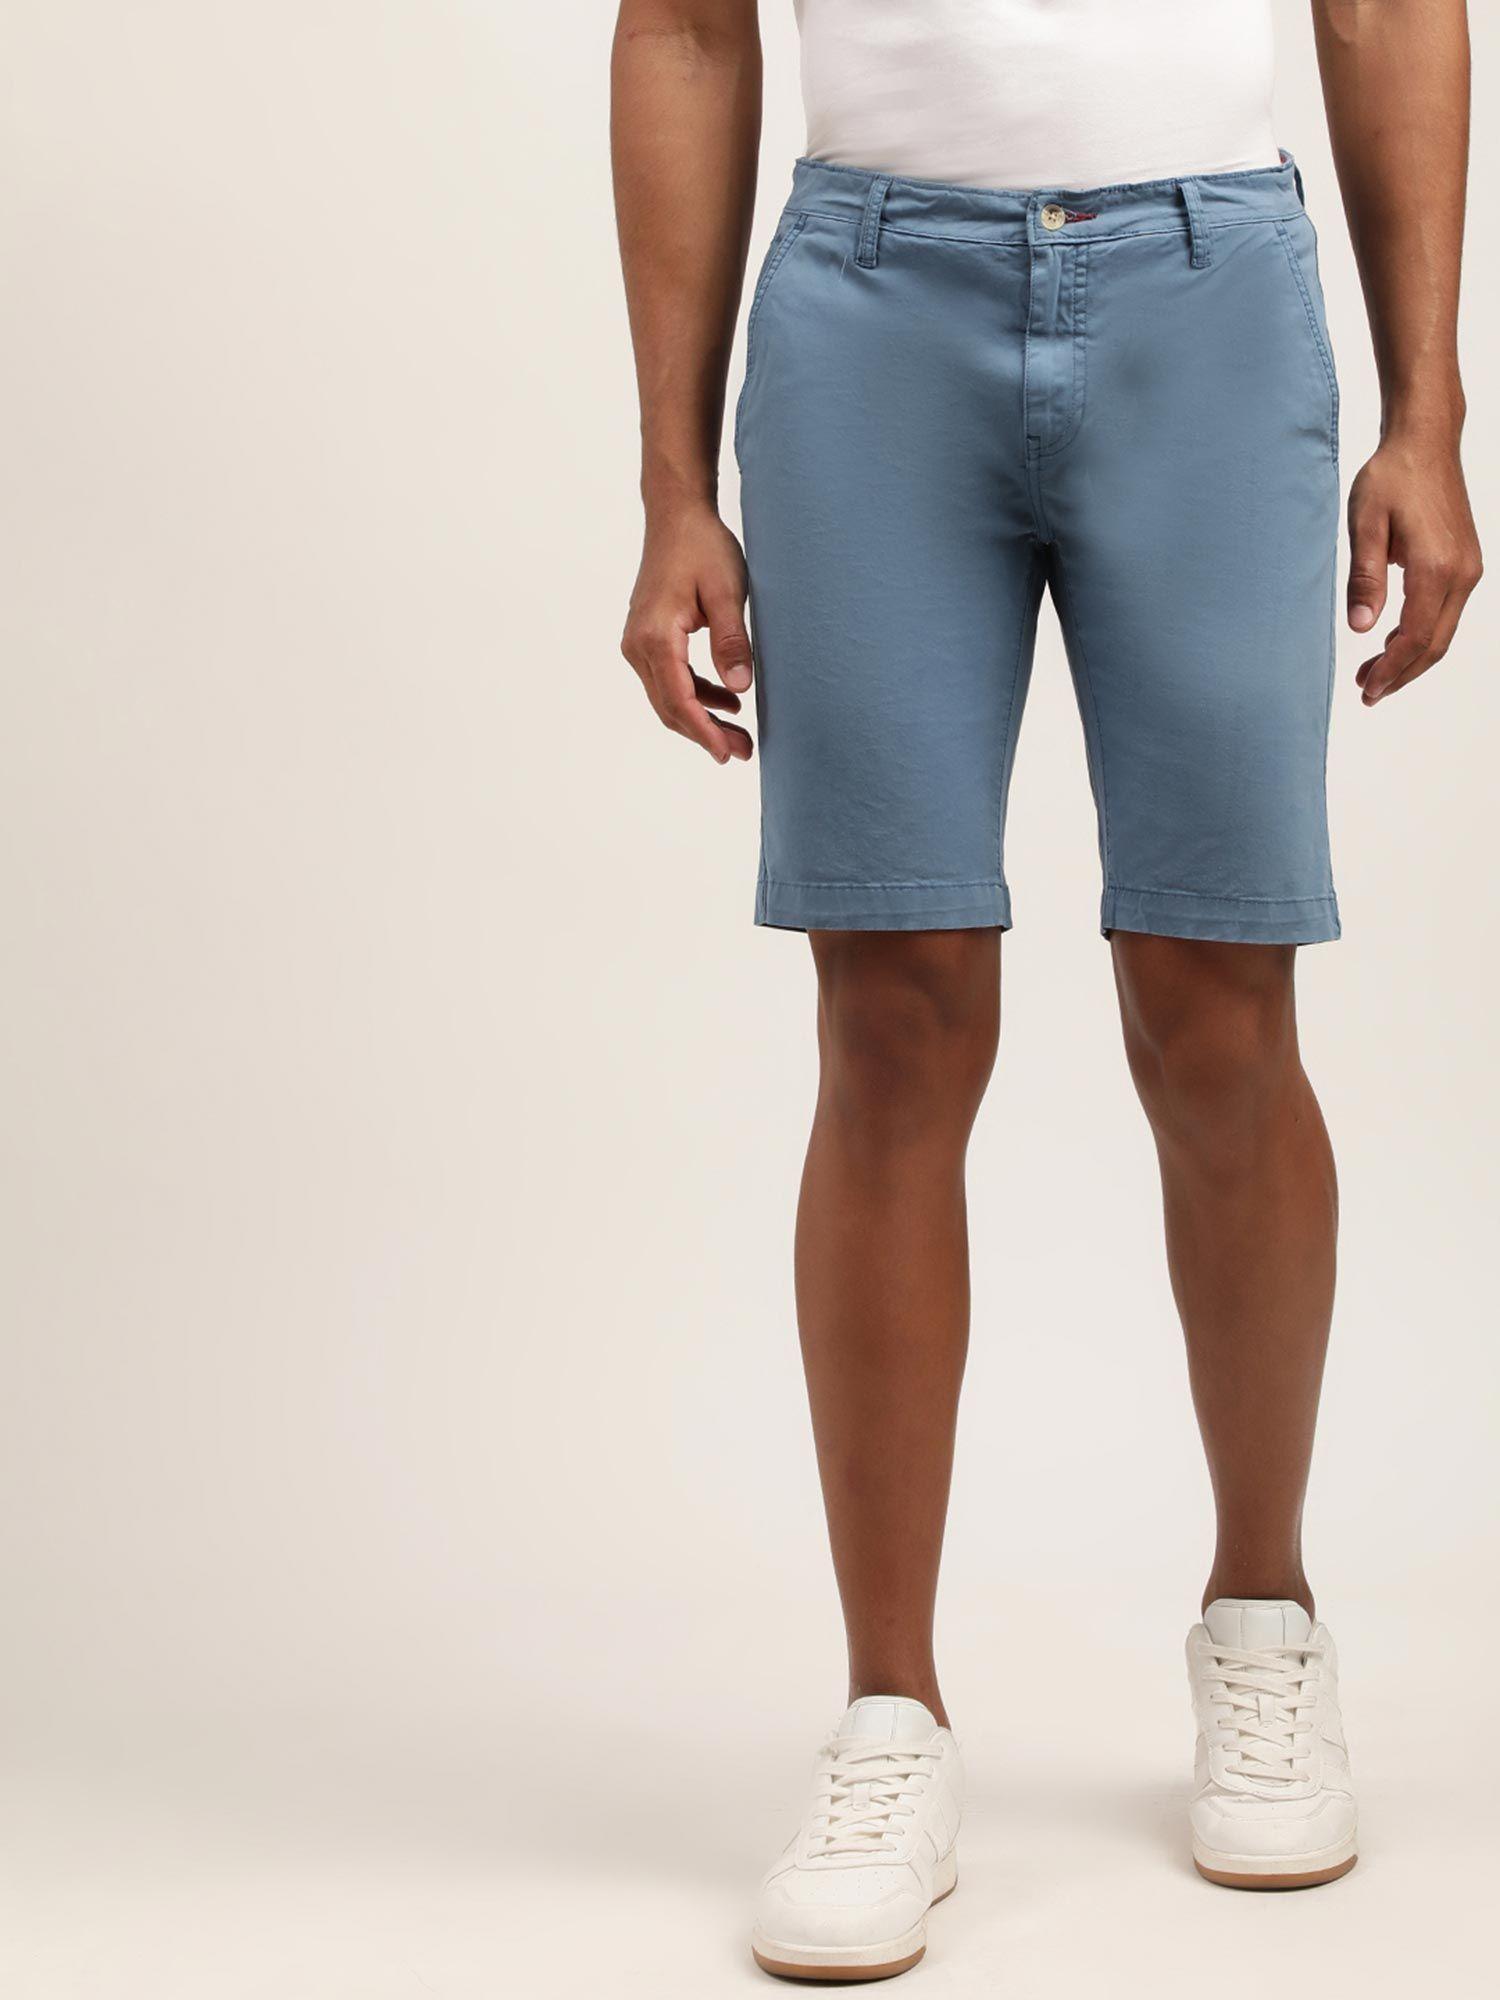 mens-solid-blue-regular-shorts